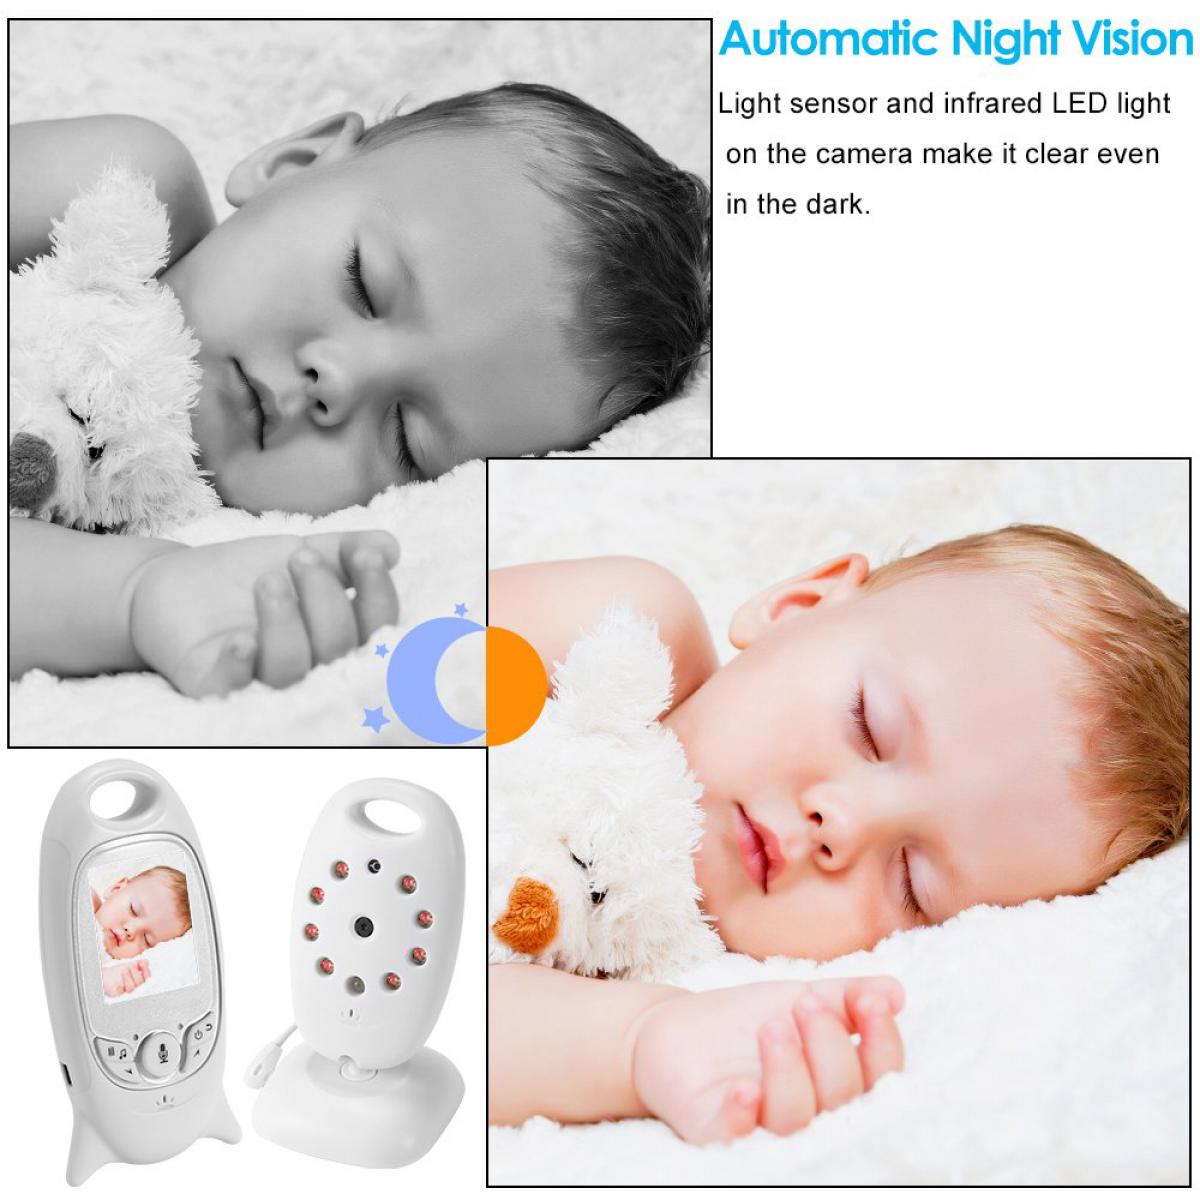 Monitor de bebé con vídeo, intercomunicador inalámbrico de vídeo para bebé  de 3,5 pulgadas Monitor de bebé inalámbrico uso conveniente